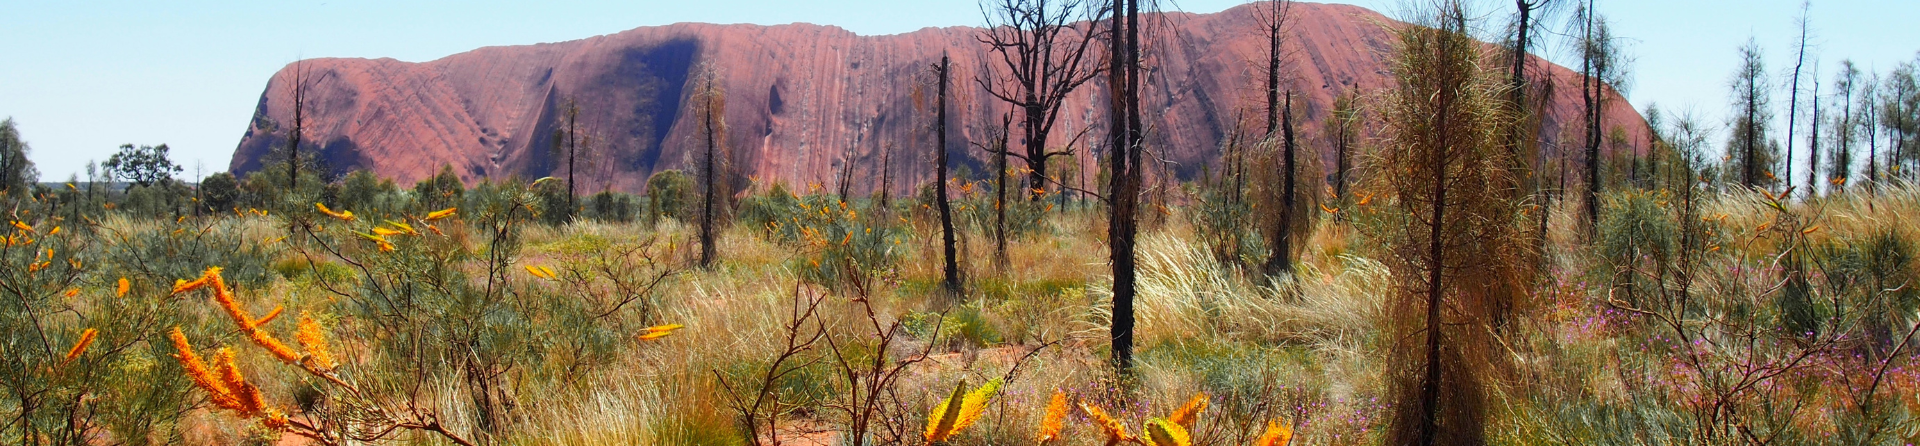 5 Australian desert plants to find in Uluru